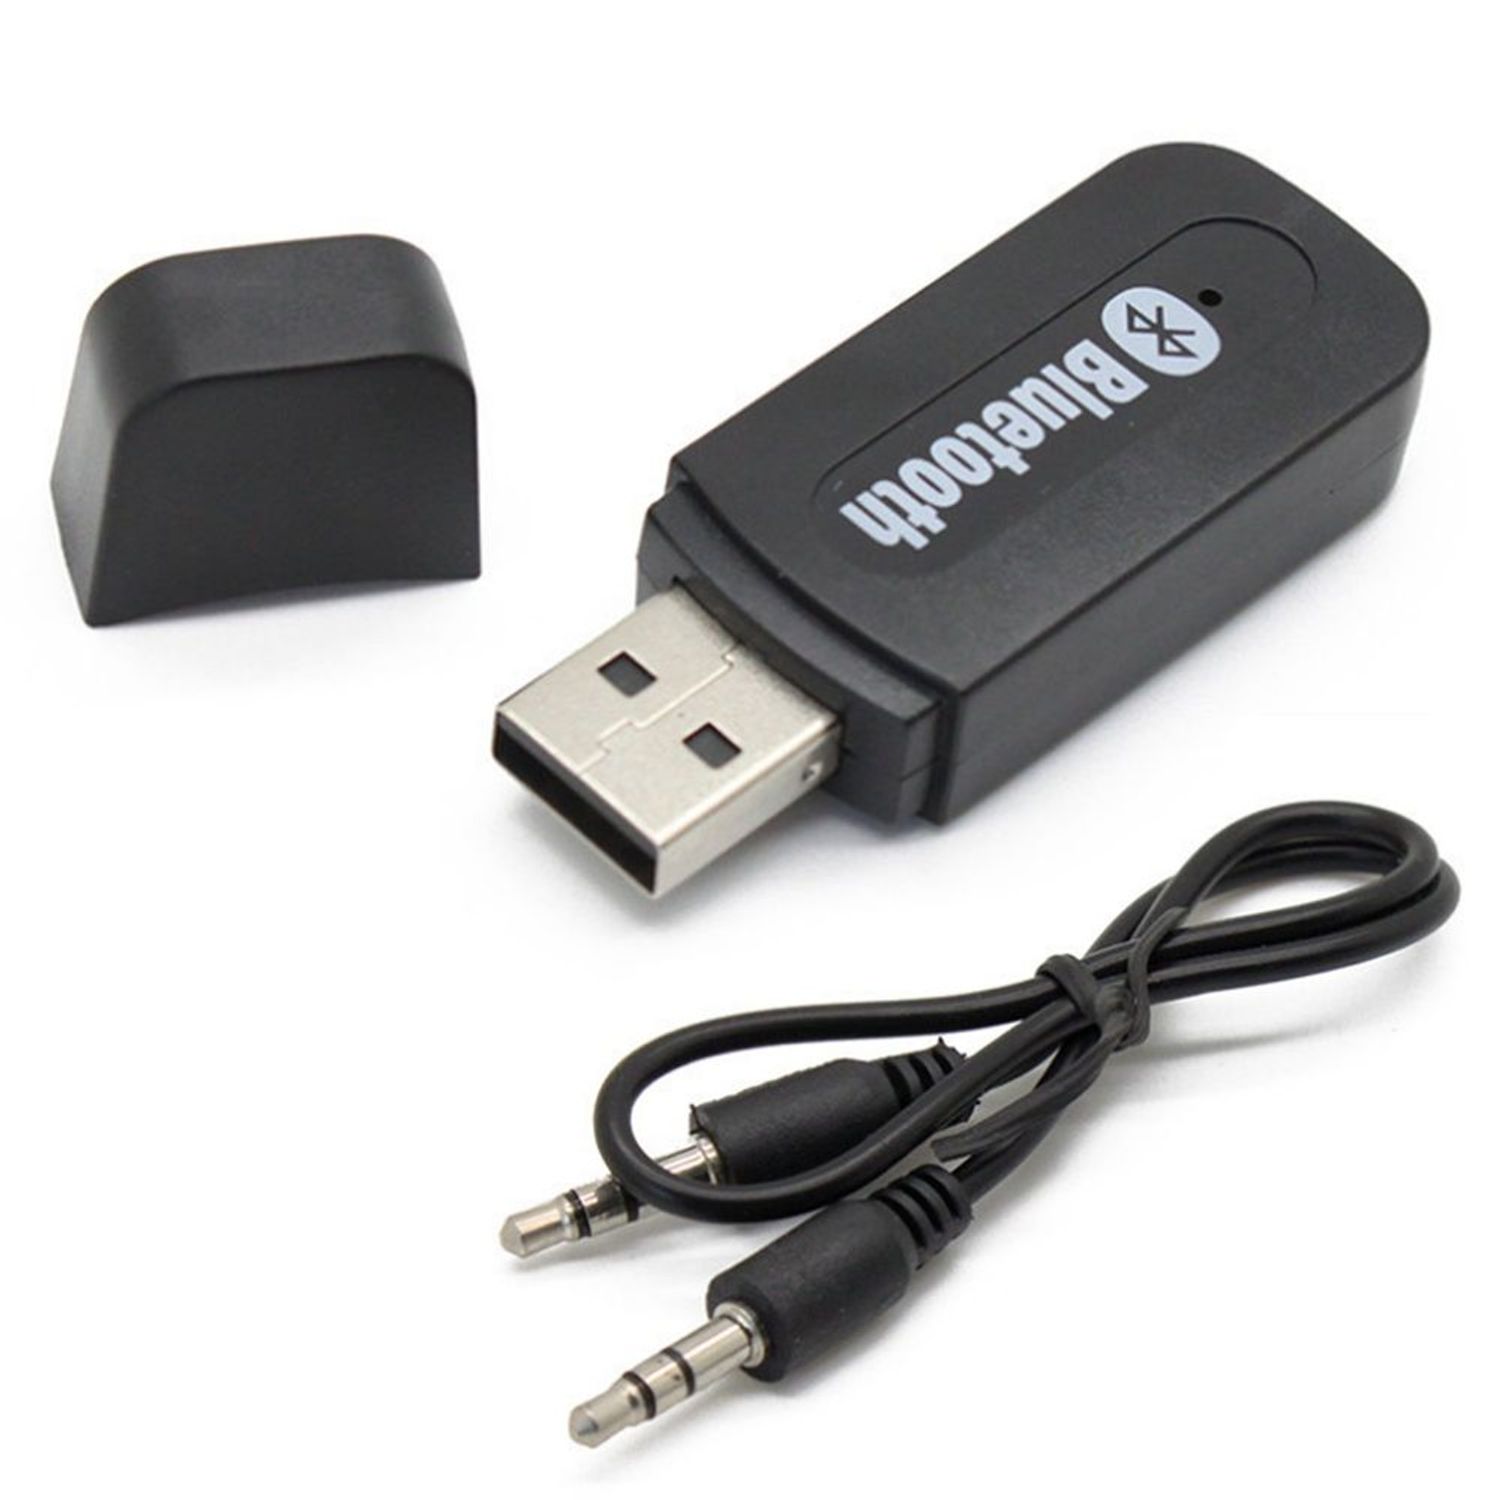 Adaptador Bluetooth para coche: mejores modelos USB y cable auxiliar